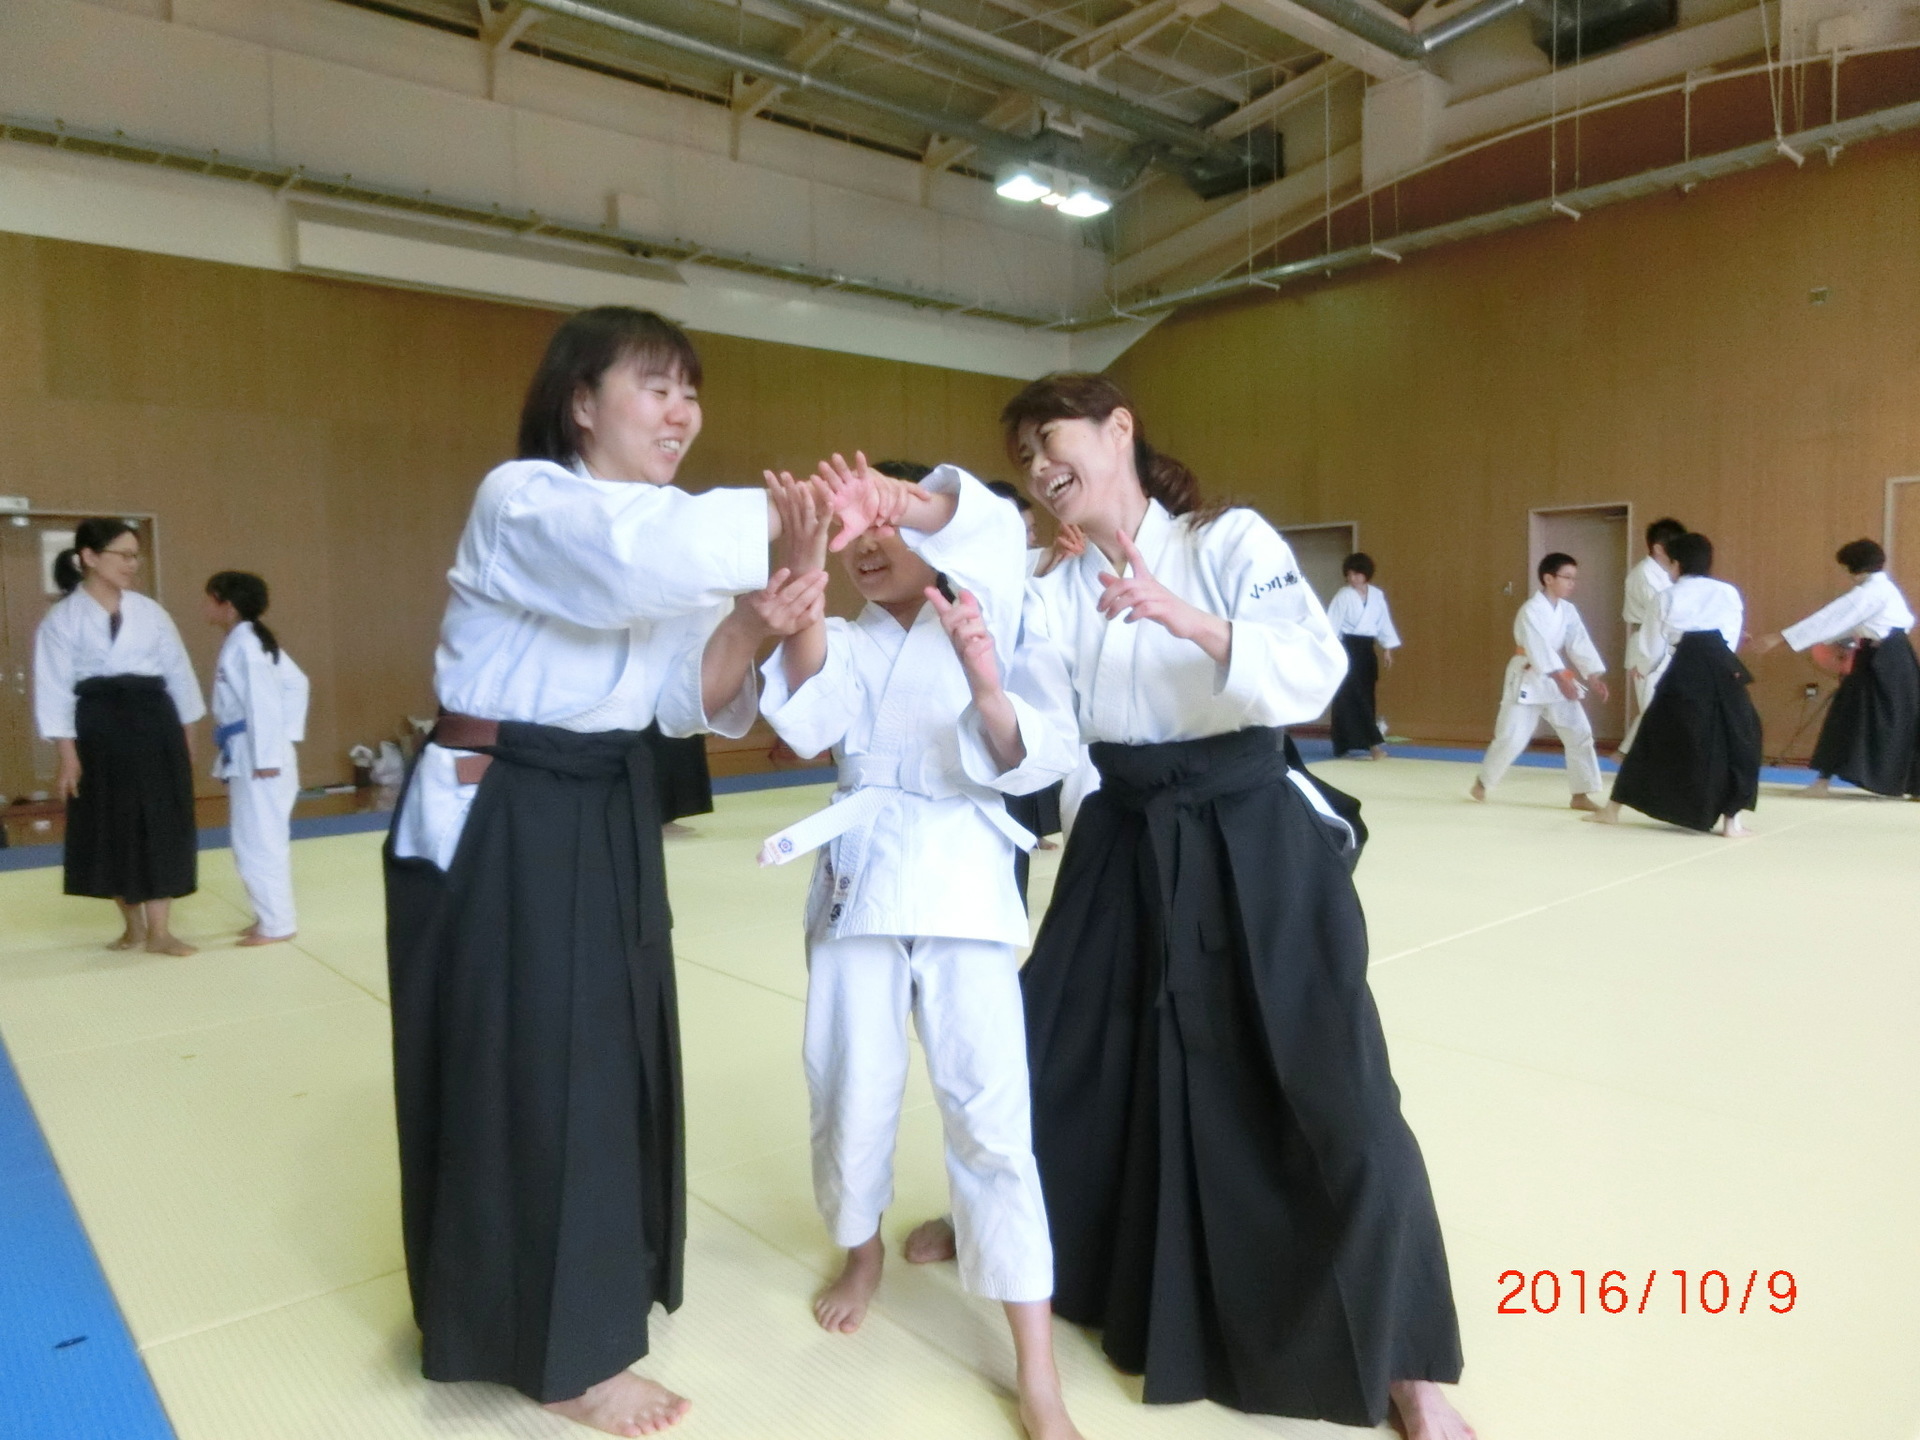 代 40代の女性の運動不足と大阪 春風会合気道 大阪 春風会合気道aikidoは大阪市住吉区の三稜中学挌技室で稽古しています